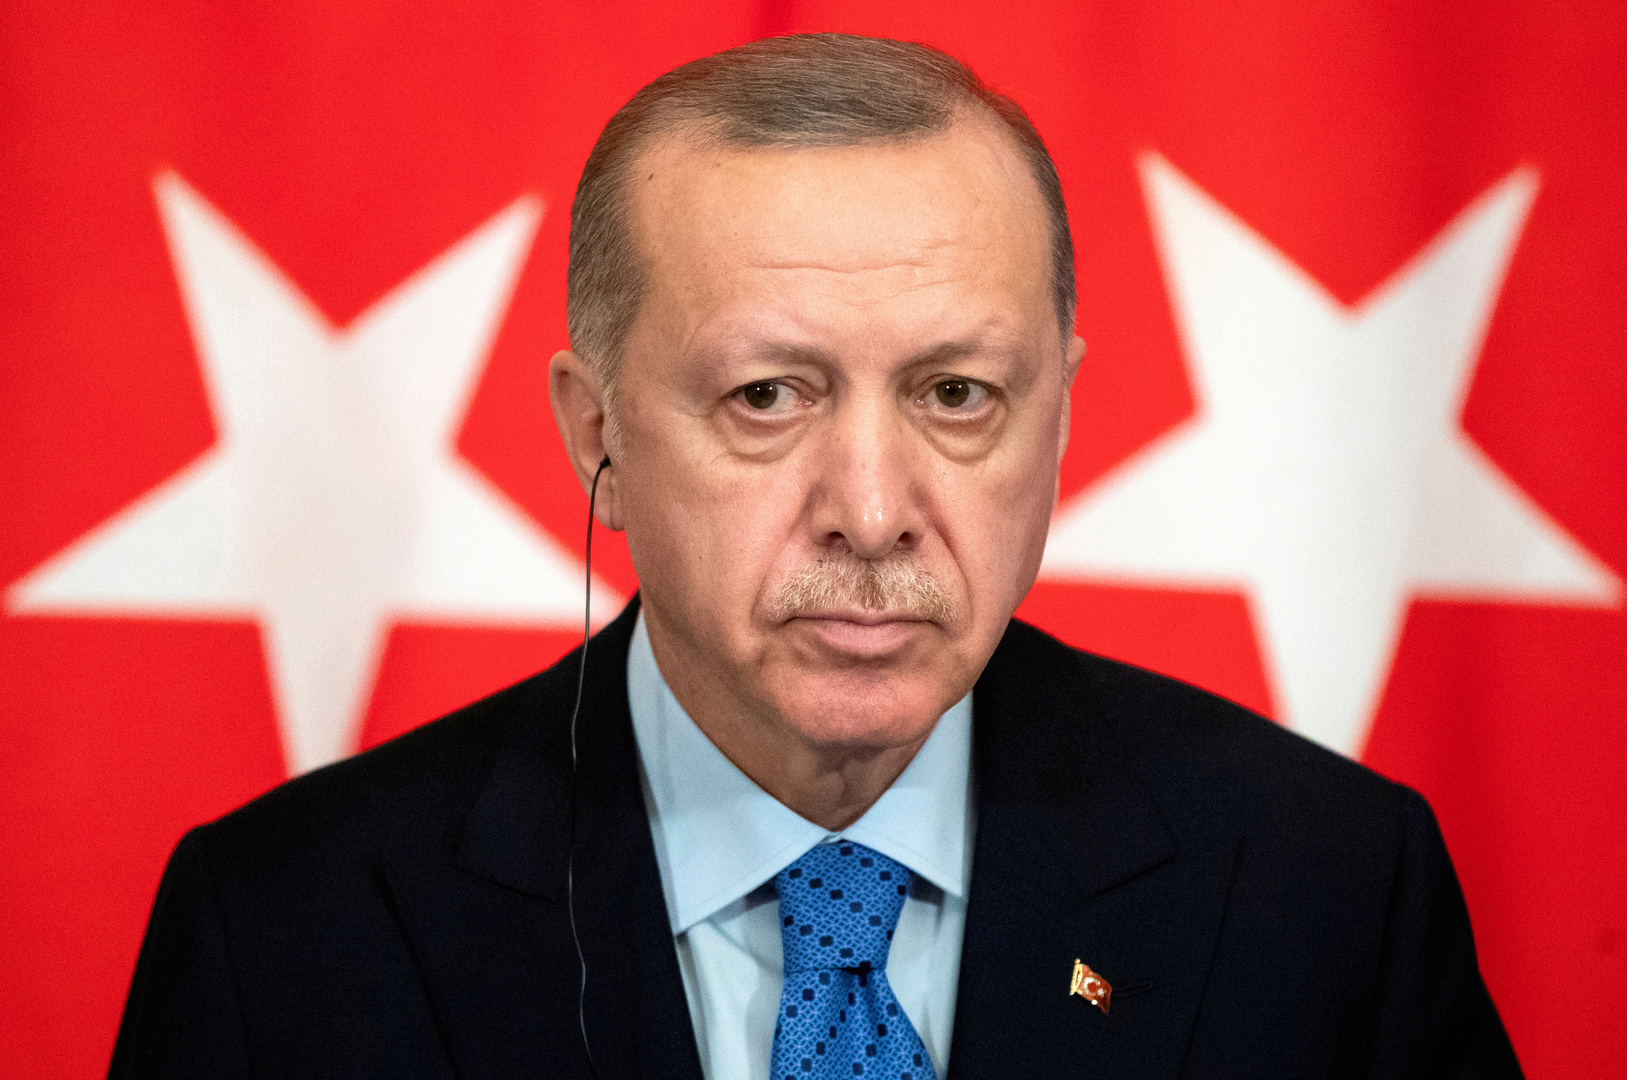 قالن: تركيا تعمل للحفاظ على التوازن بين الأمن والديمقراطية